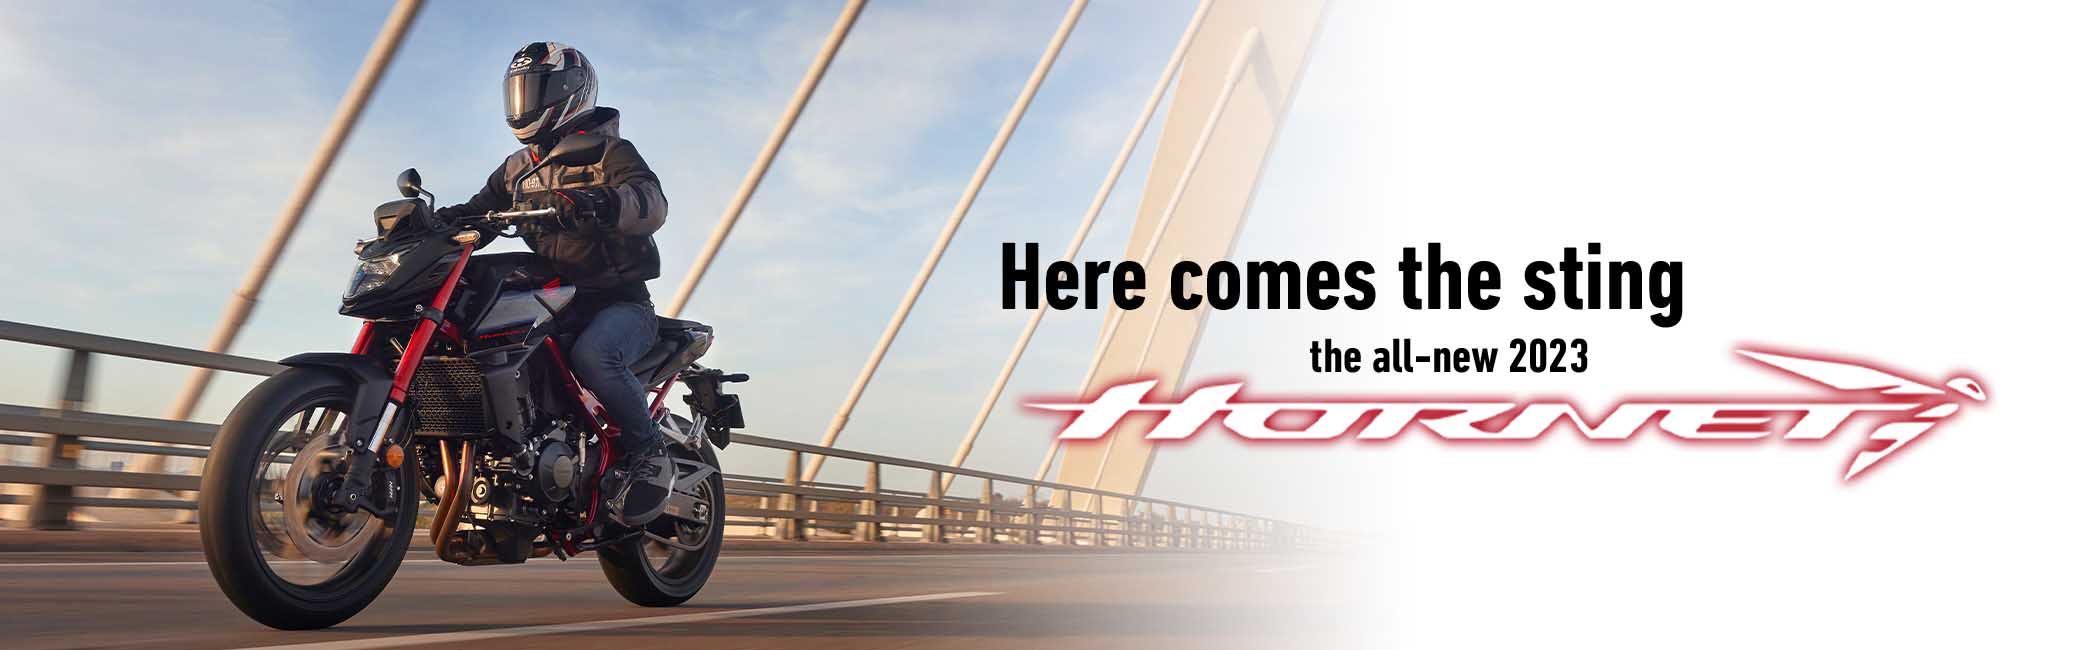 The all new 2023 Honda CB750 Hornet